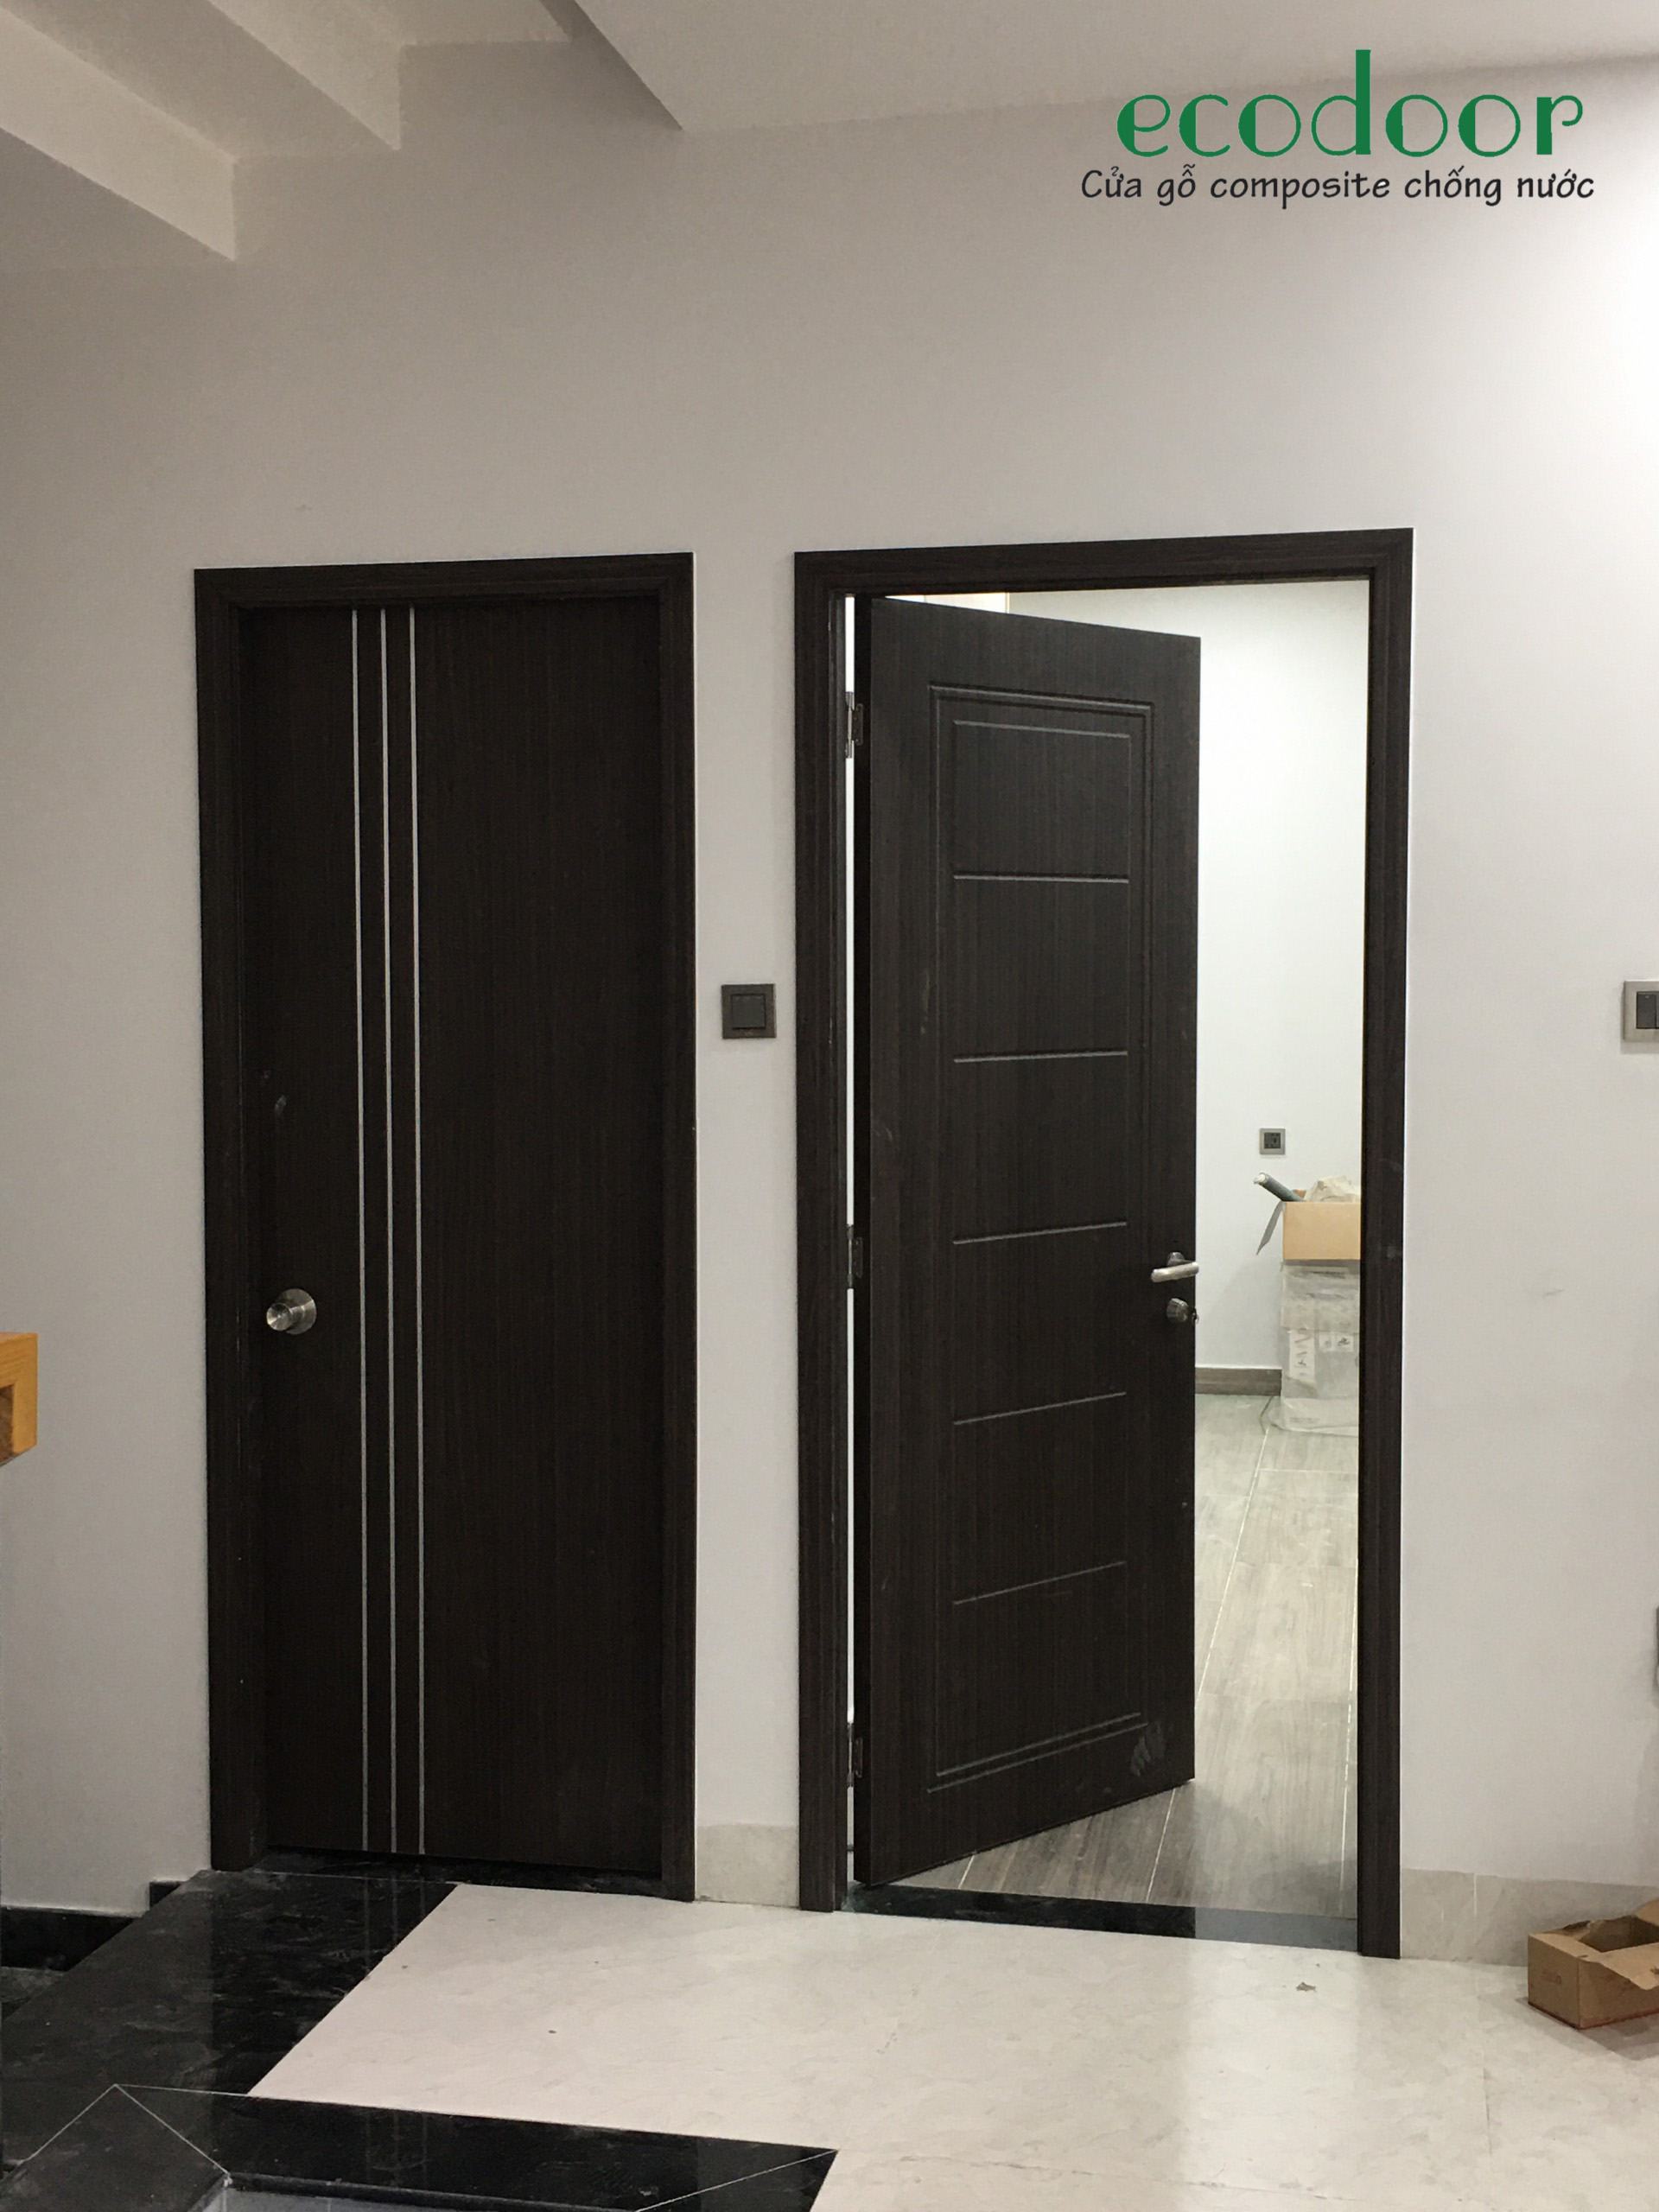 ECODOOR Thi công cửa gỗ nhựa composite tại Lâm Đồng 